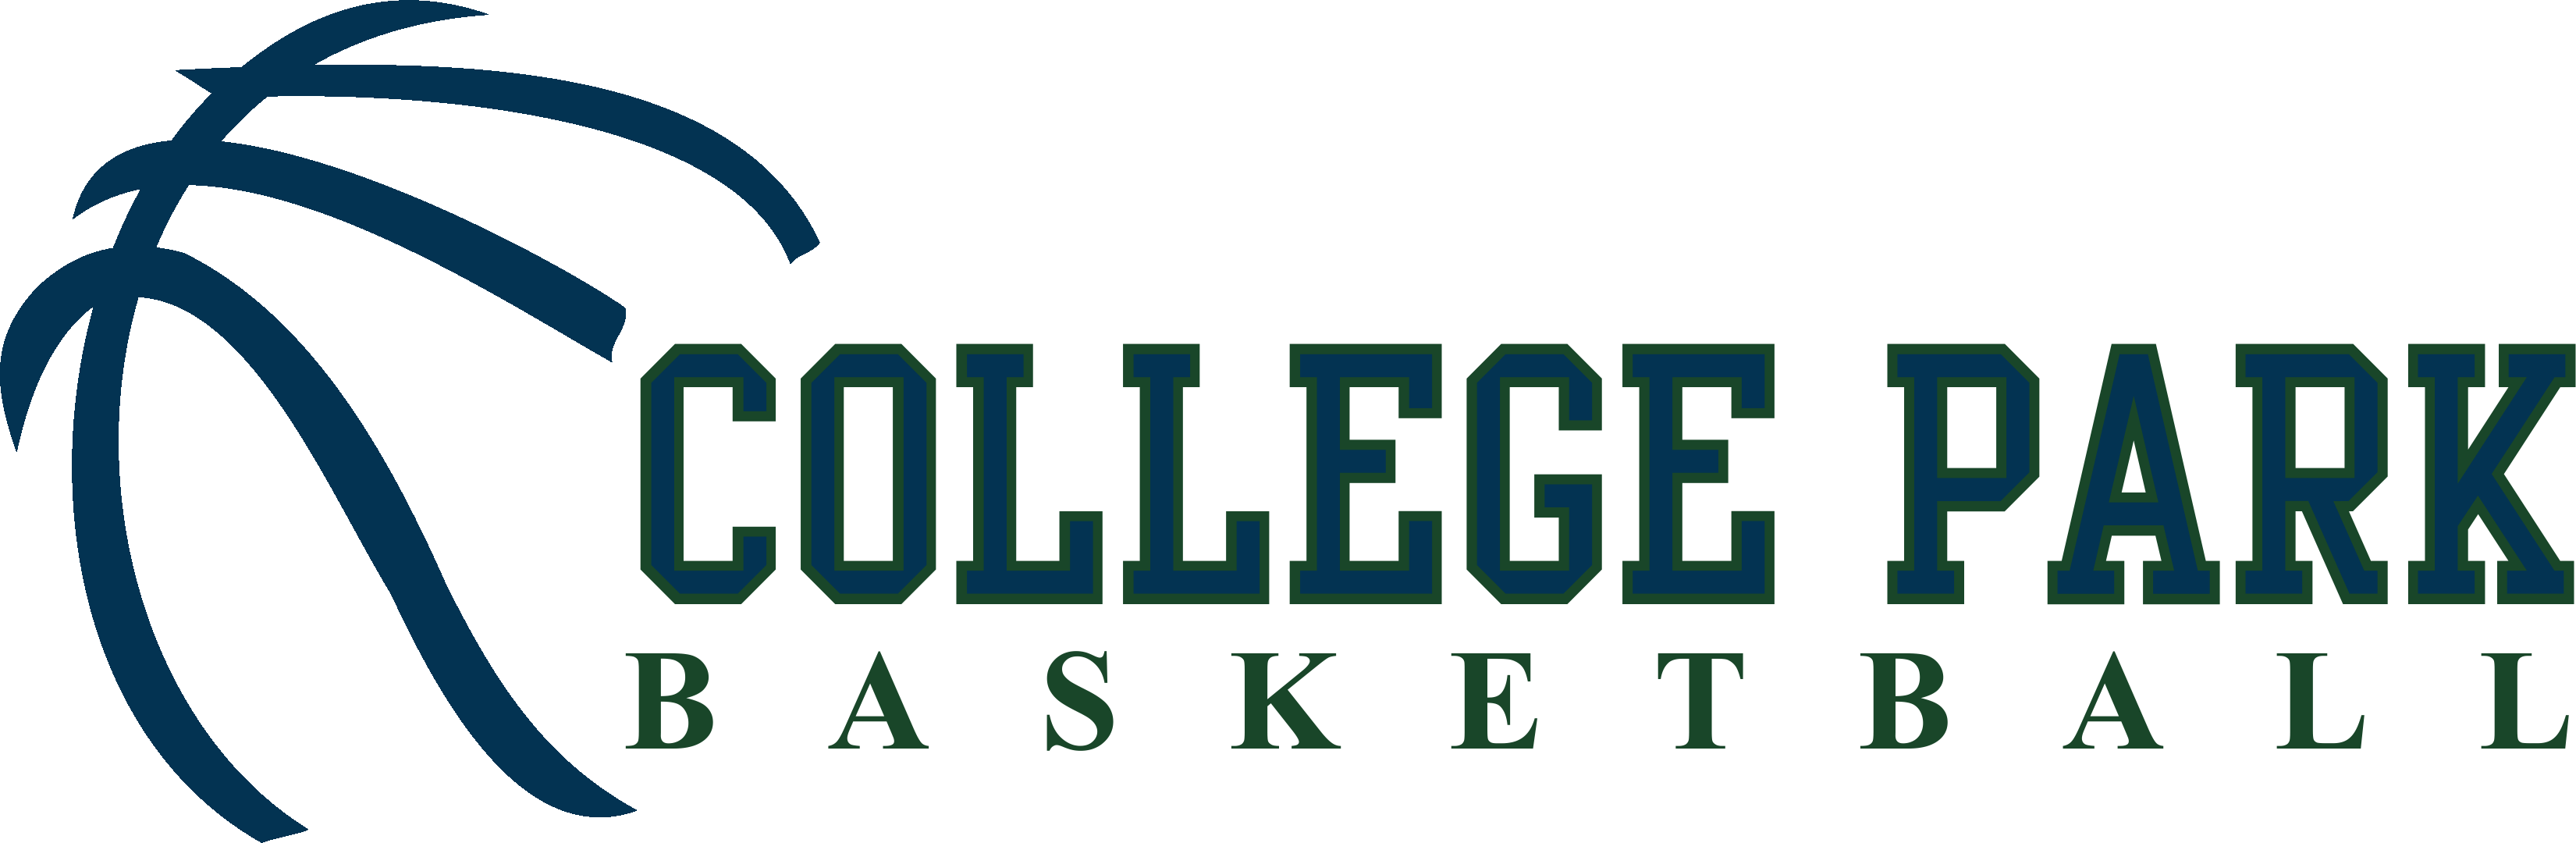 CP Basketball logo